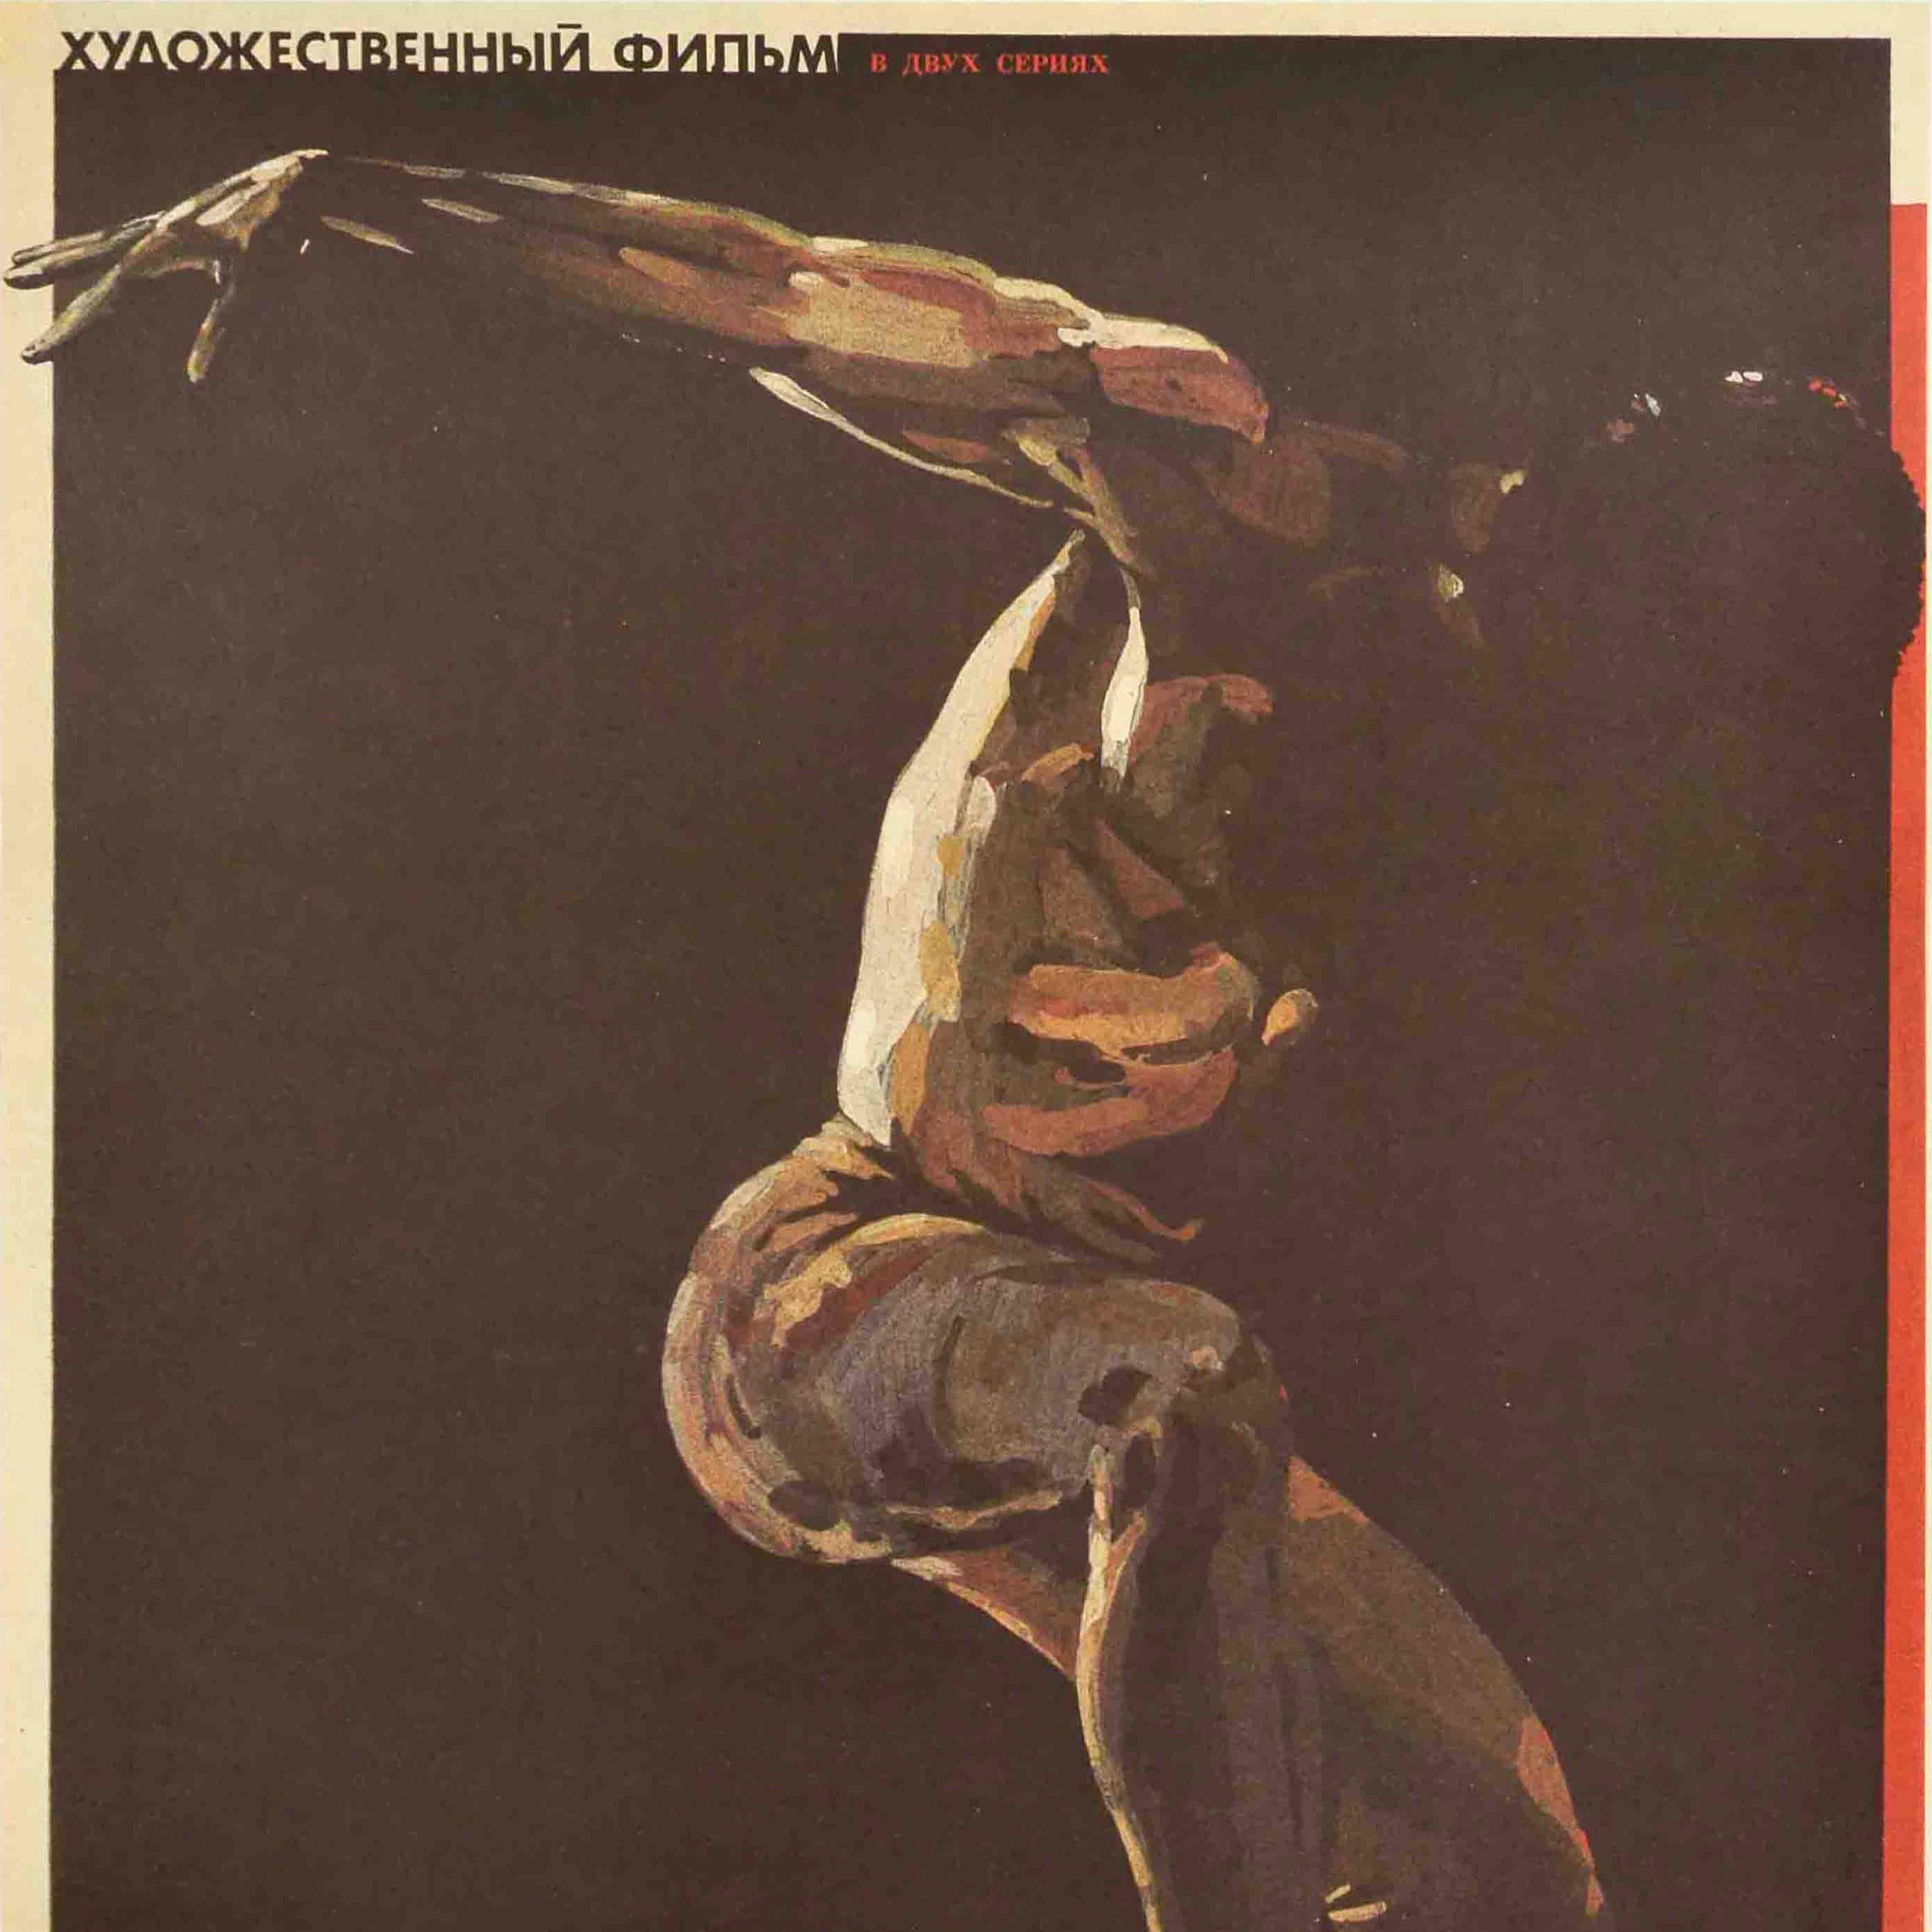 Original-Vintage-Filmplakat Chorus Line Broadway, Musical Dance, Michael Douglas (Braun), Print, von Unknown